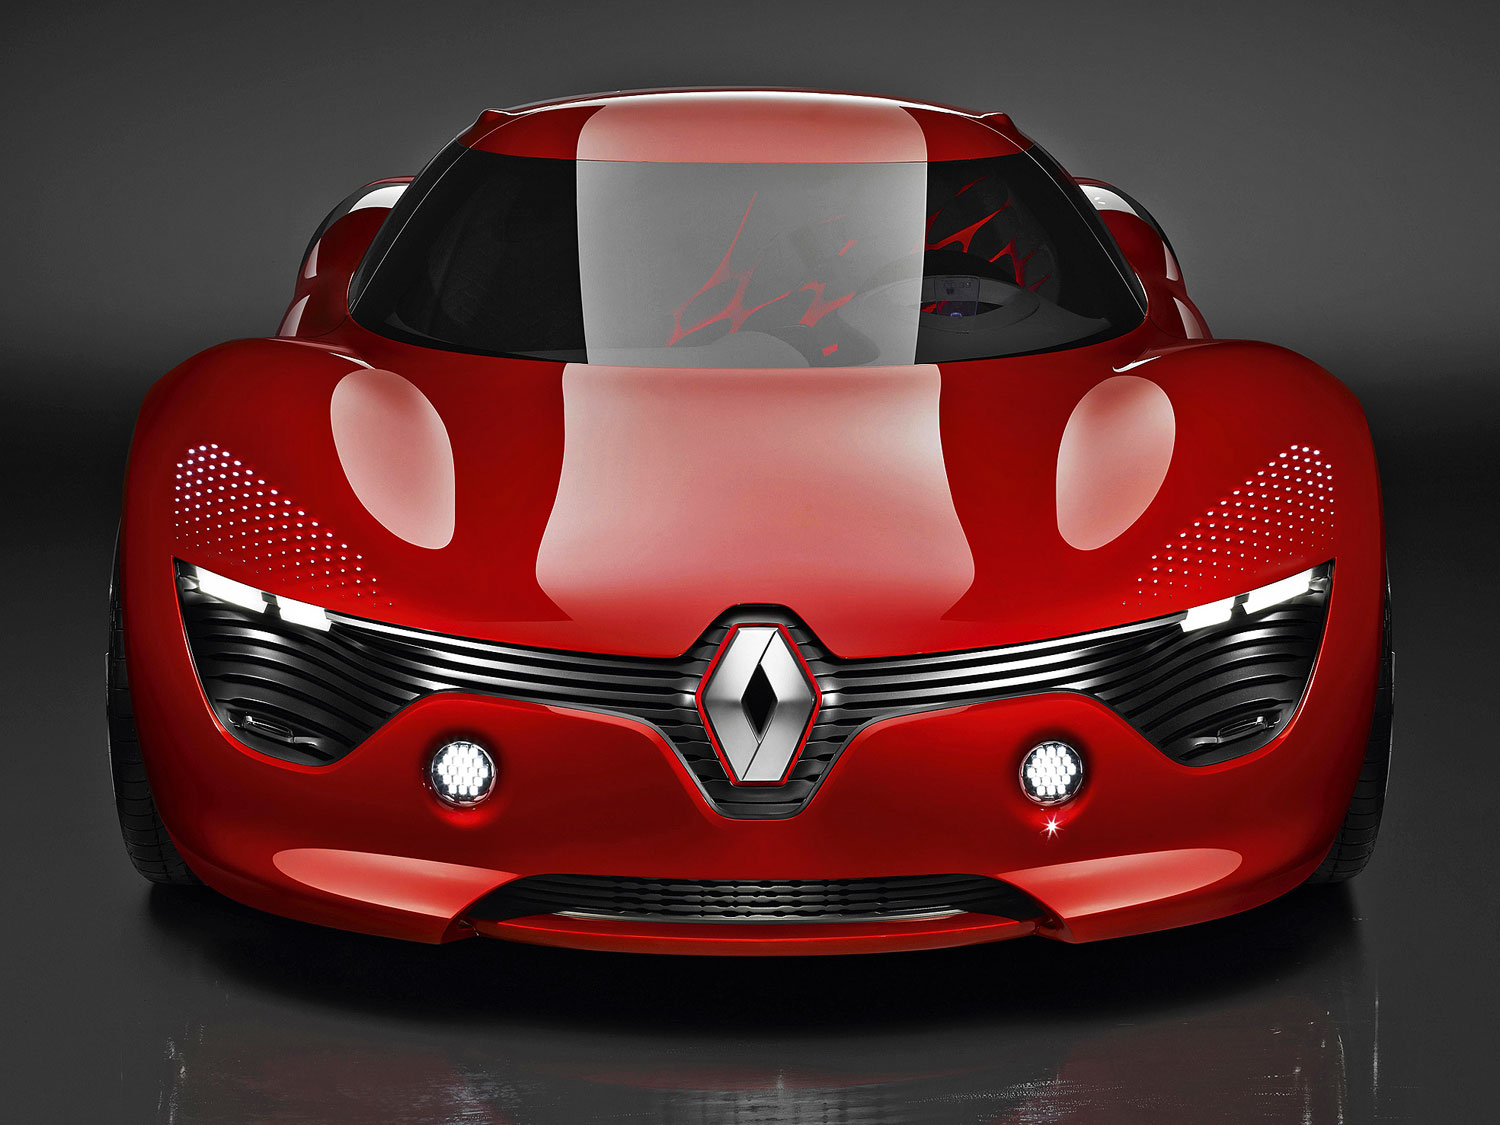 Több modell forrása a Renault DeZir koncepció